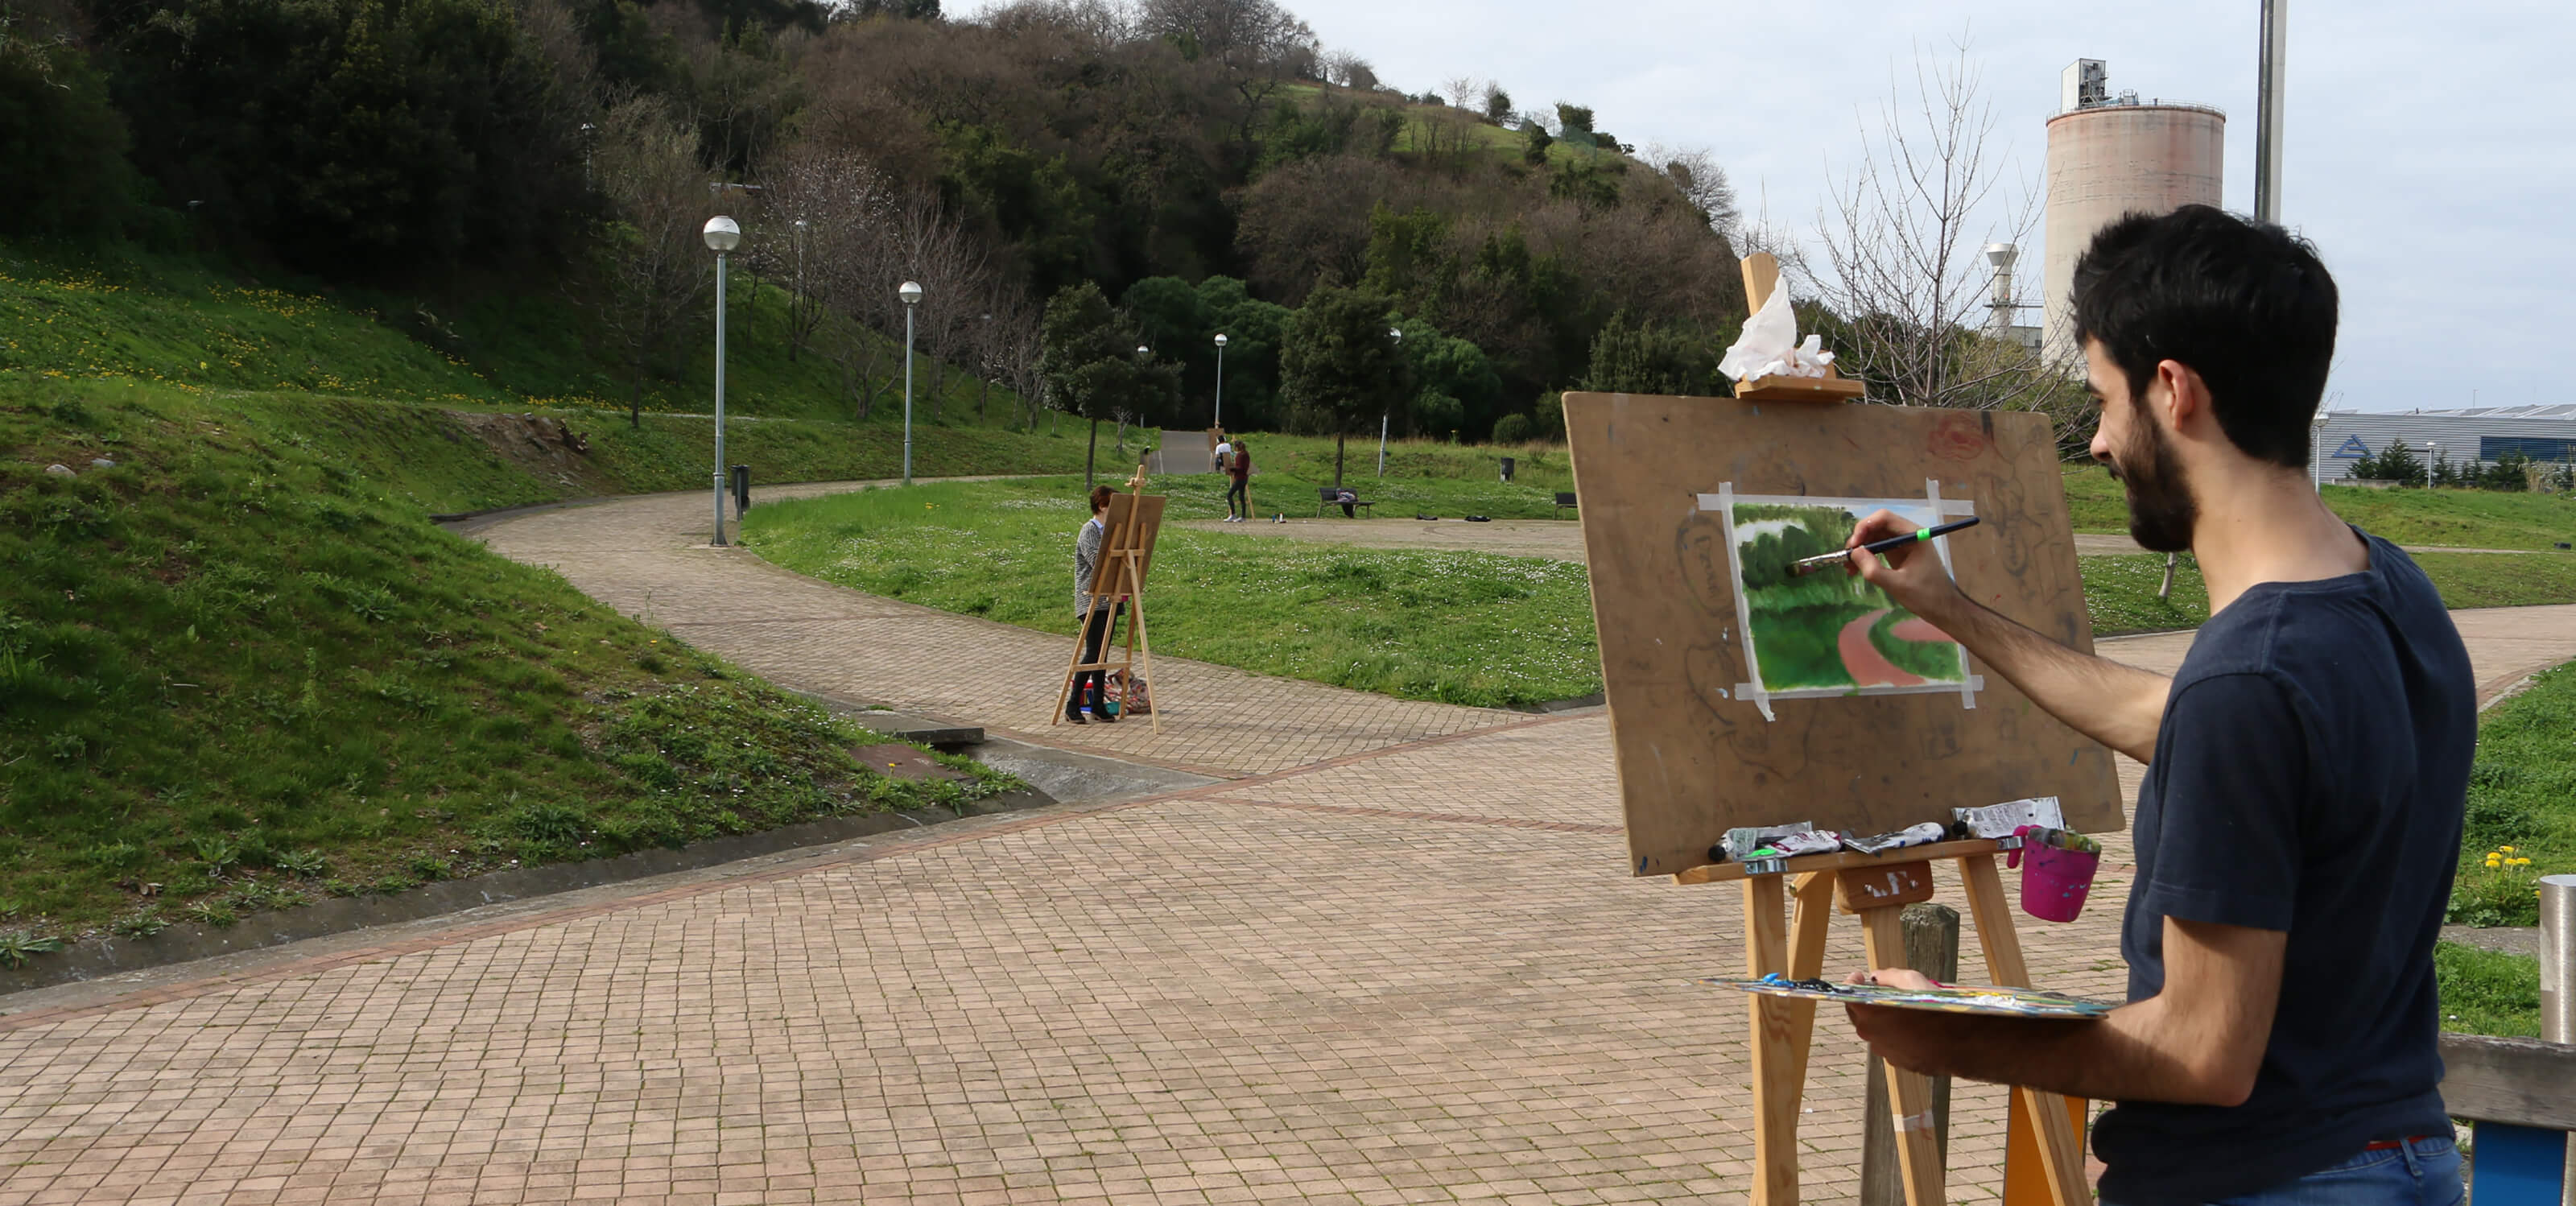 Alumnos de DigiPen Europe-Bilbao pintan en caballetes en un parque.